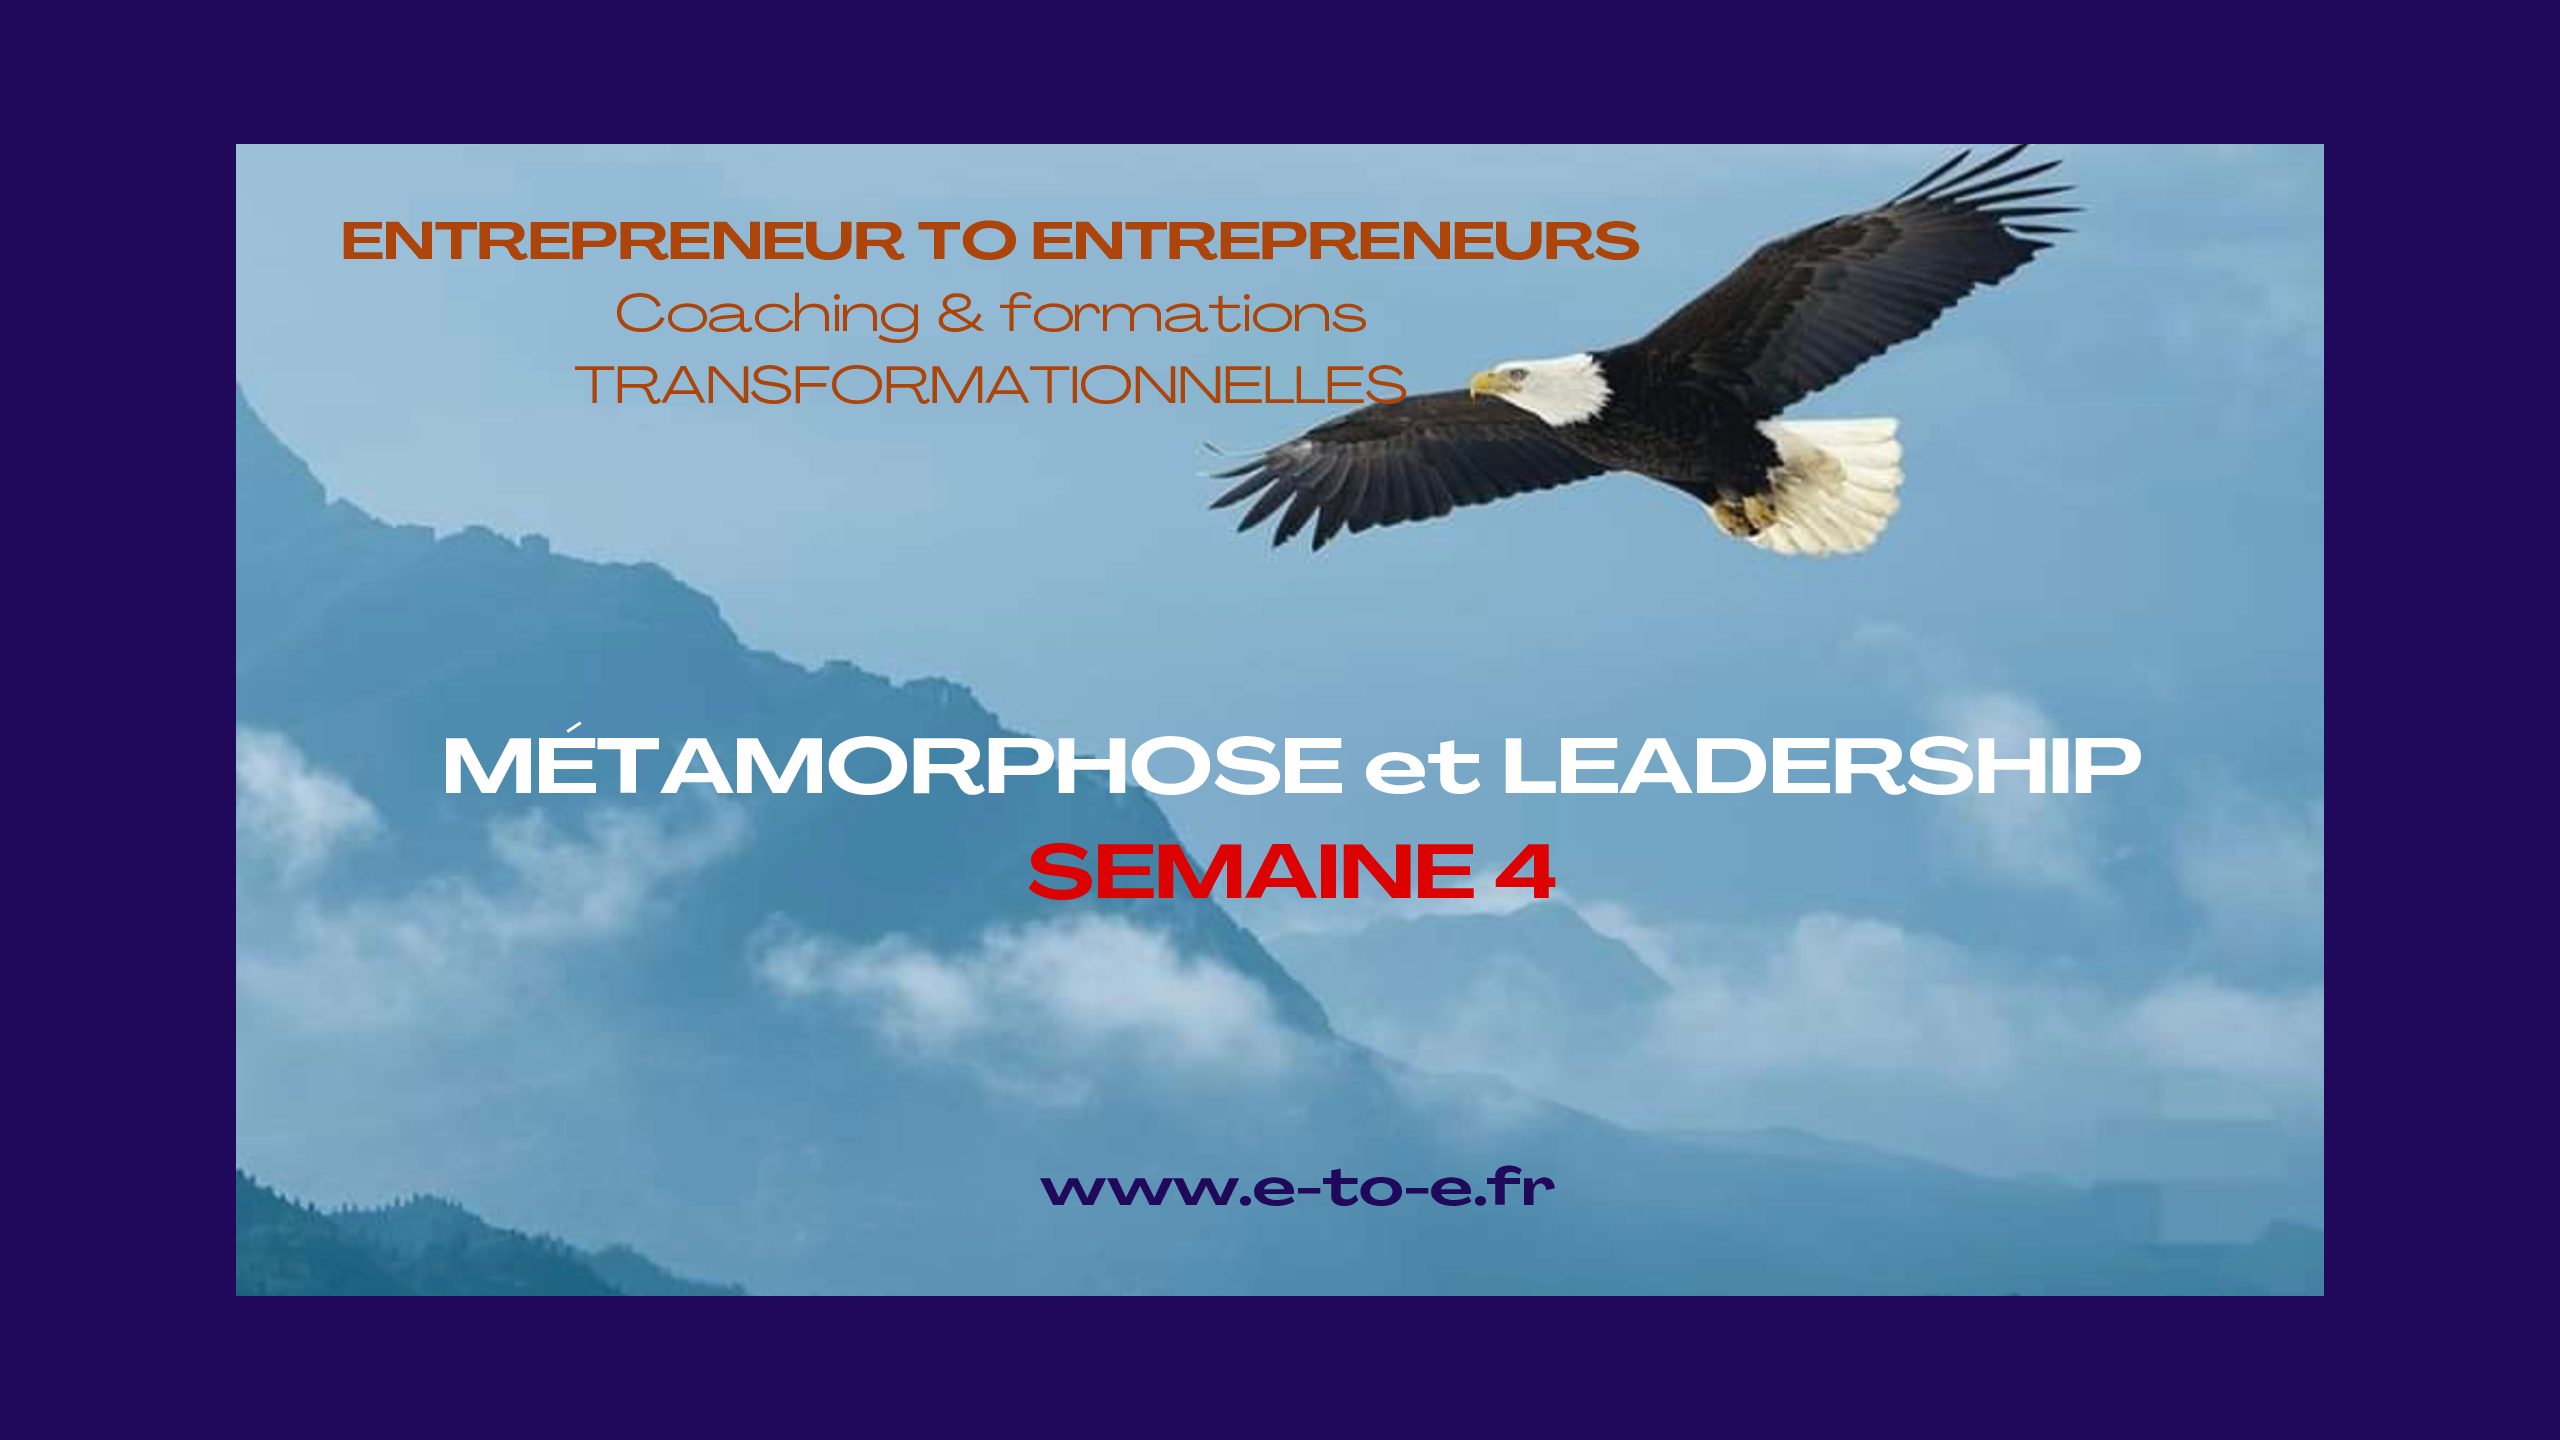 MÉTAMORPHOSE & LEADERSHIP SEMAINE 4